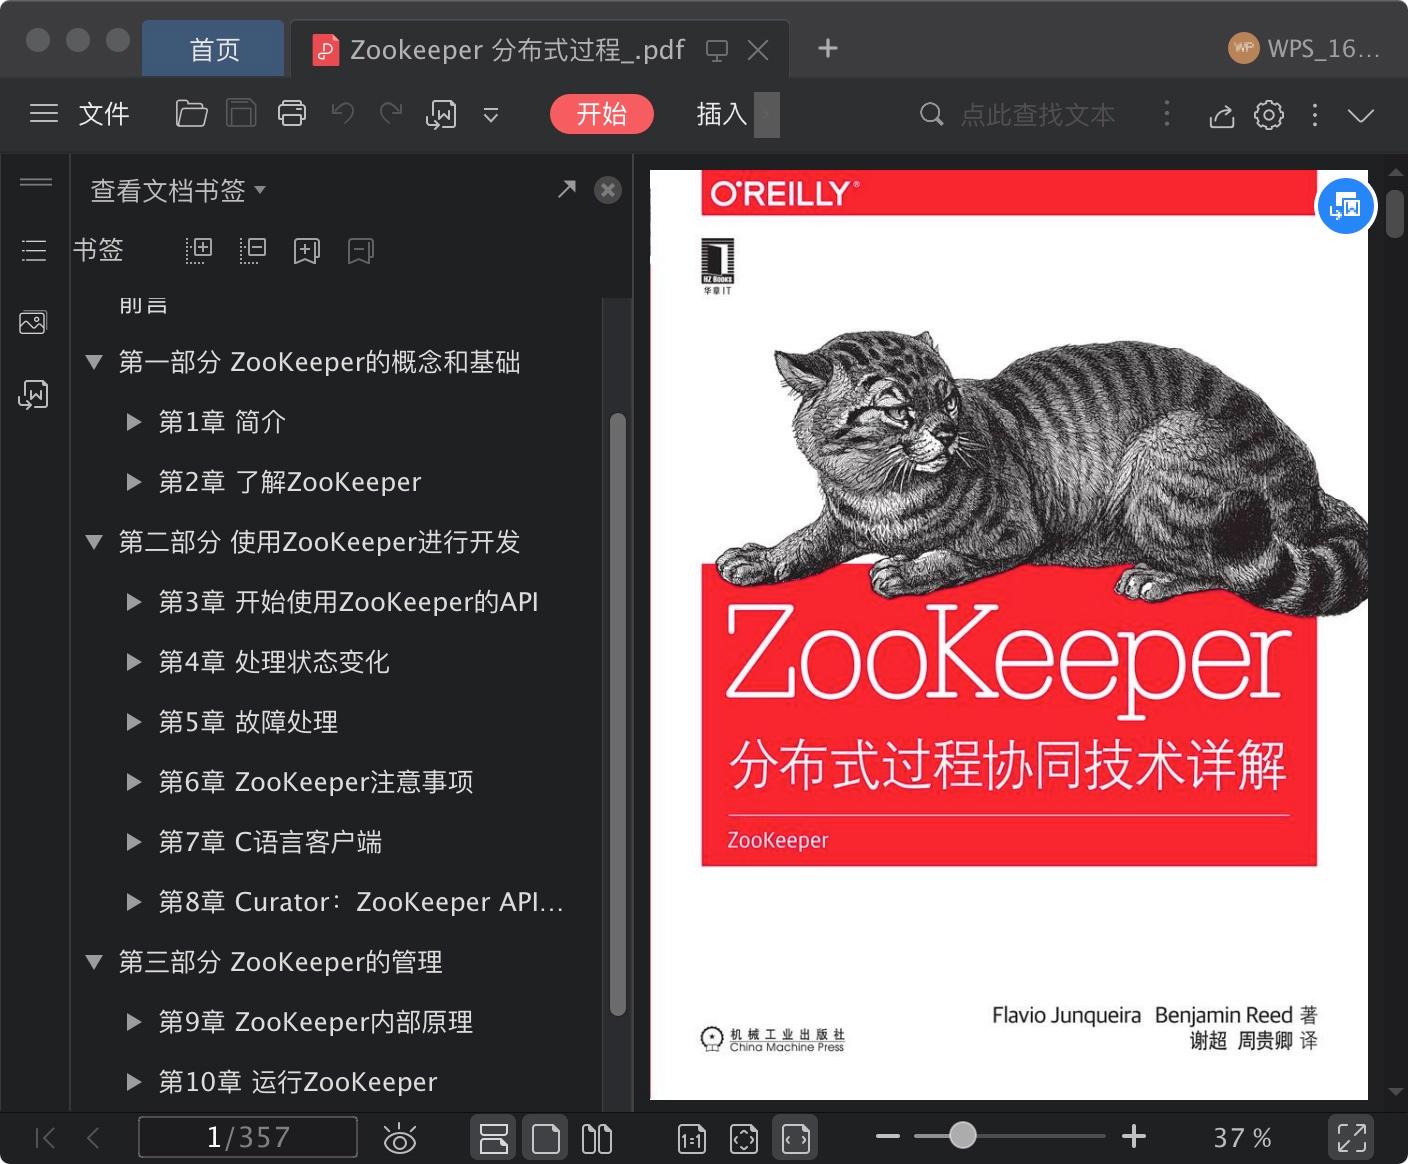 Zookeeper 分布式过程协同技术讲解pdf电子书籍下载百度云